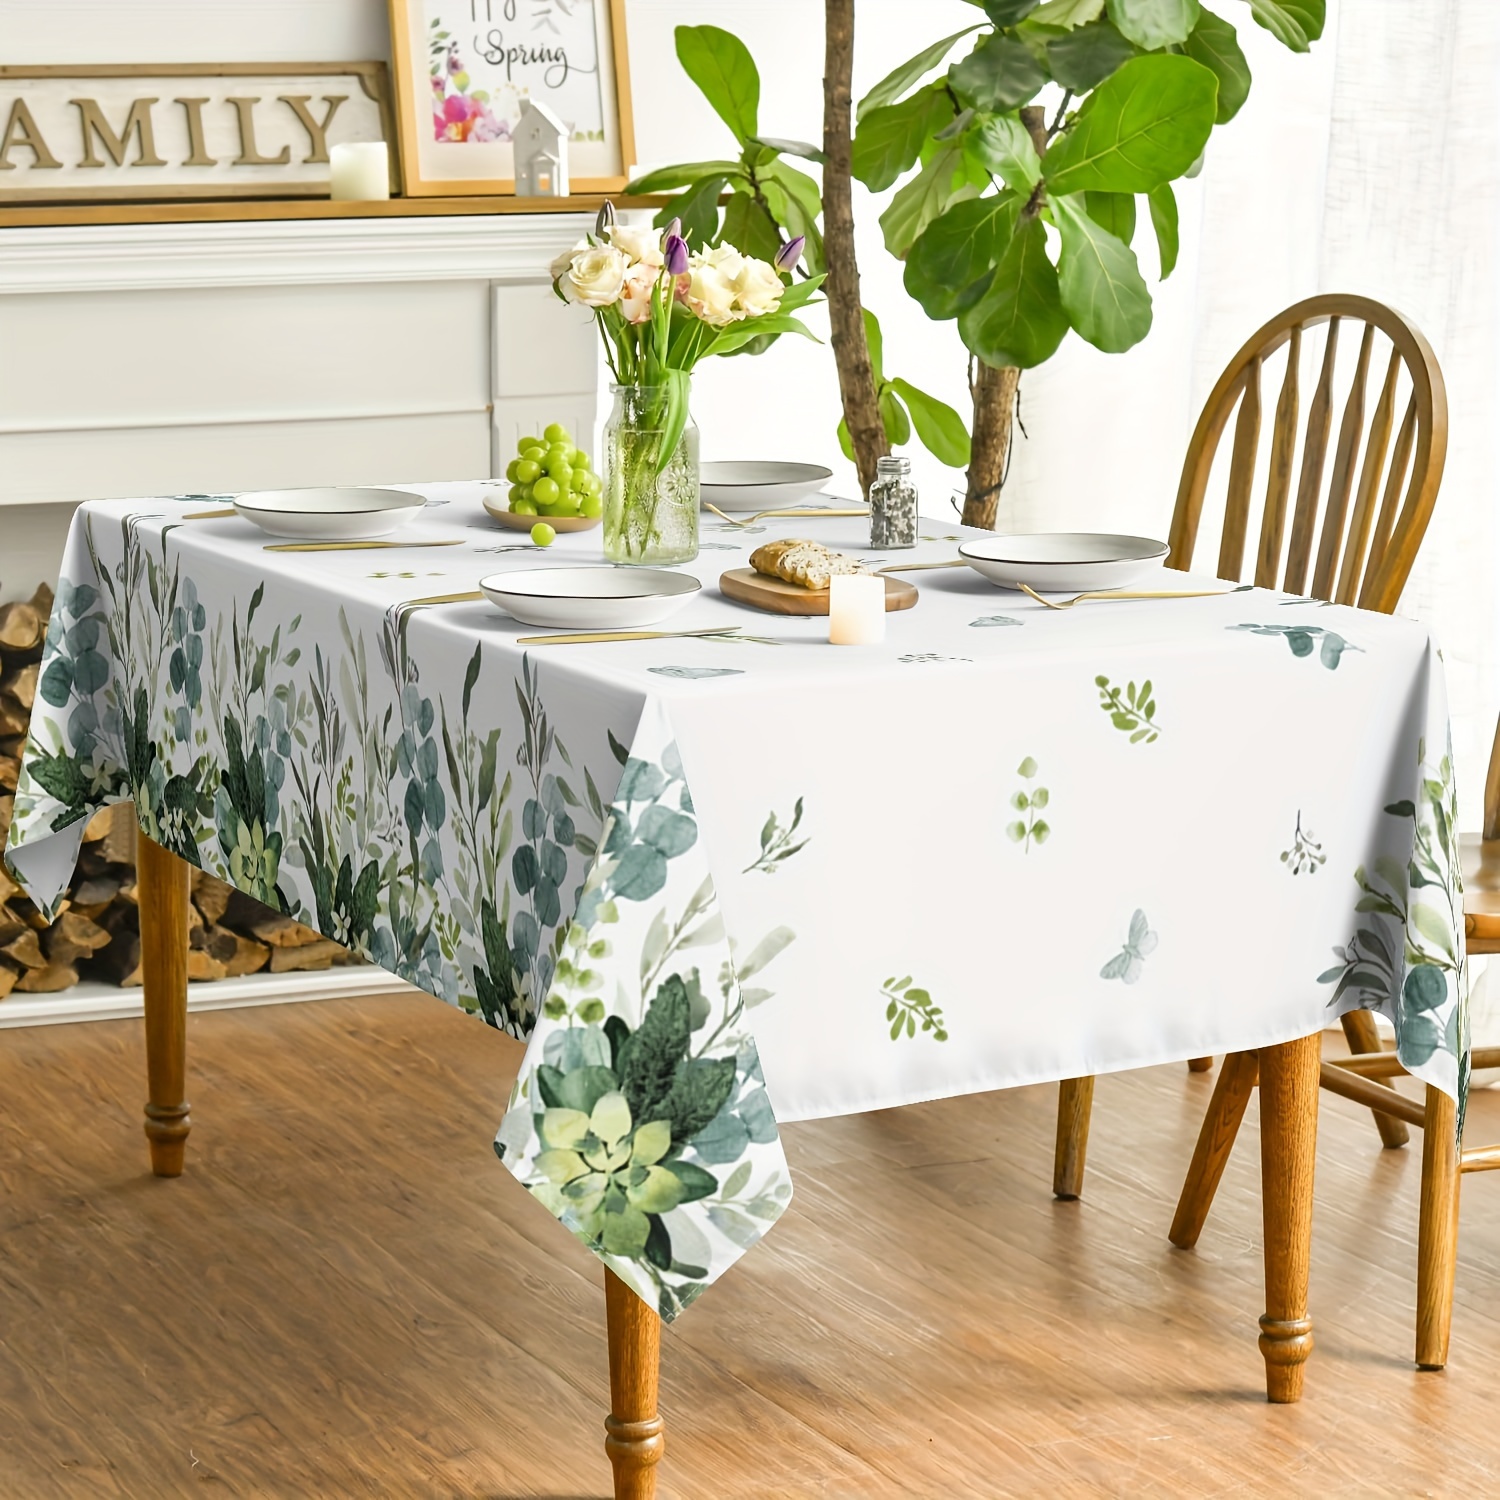 

Sm:)e Spring Summer Tablecloth Rectangular, Eucalyptus Floral Table Cover For Party Picnic Dinner Decor